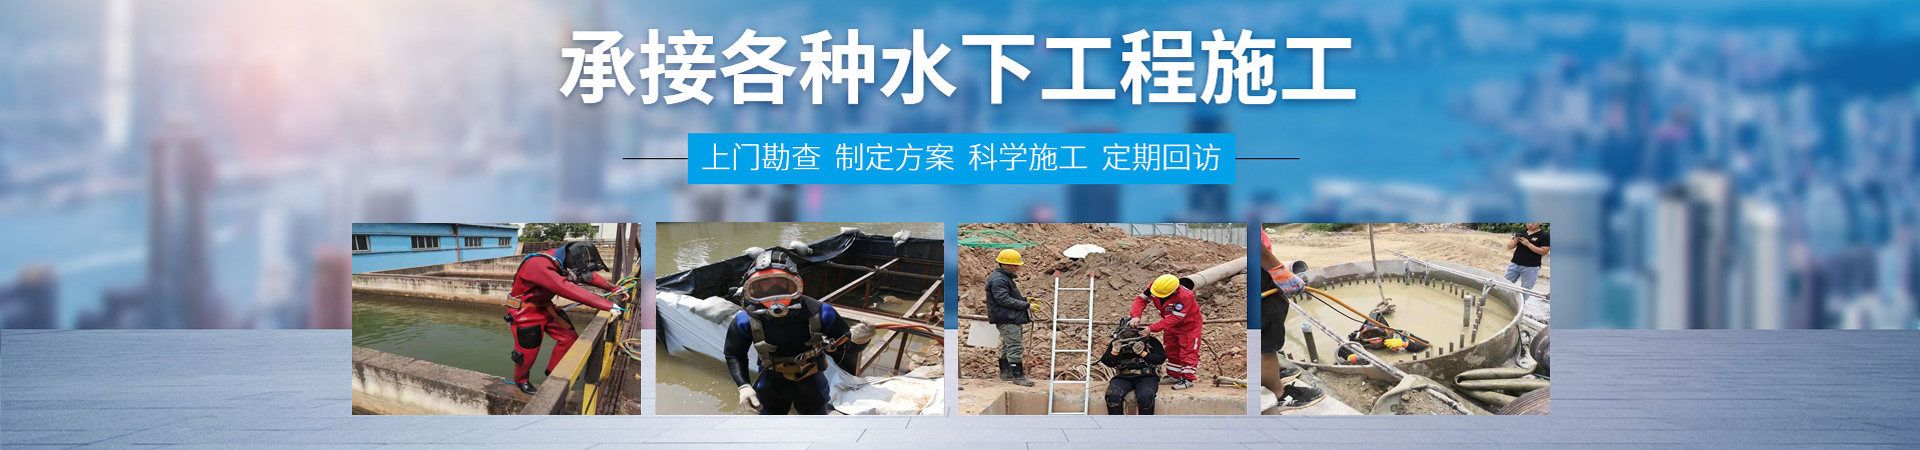 管道水下安装团队、北京本地管道水下安装团队、北京、北京管道水下安装团队